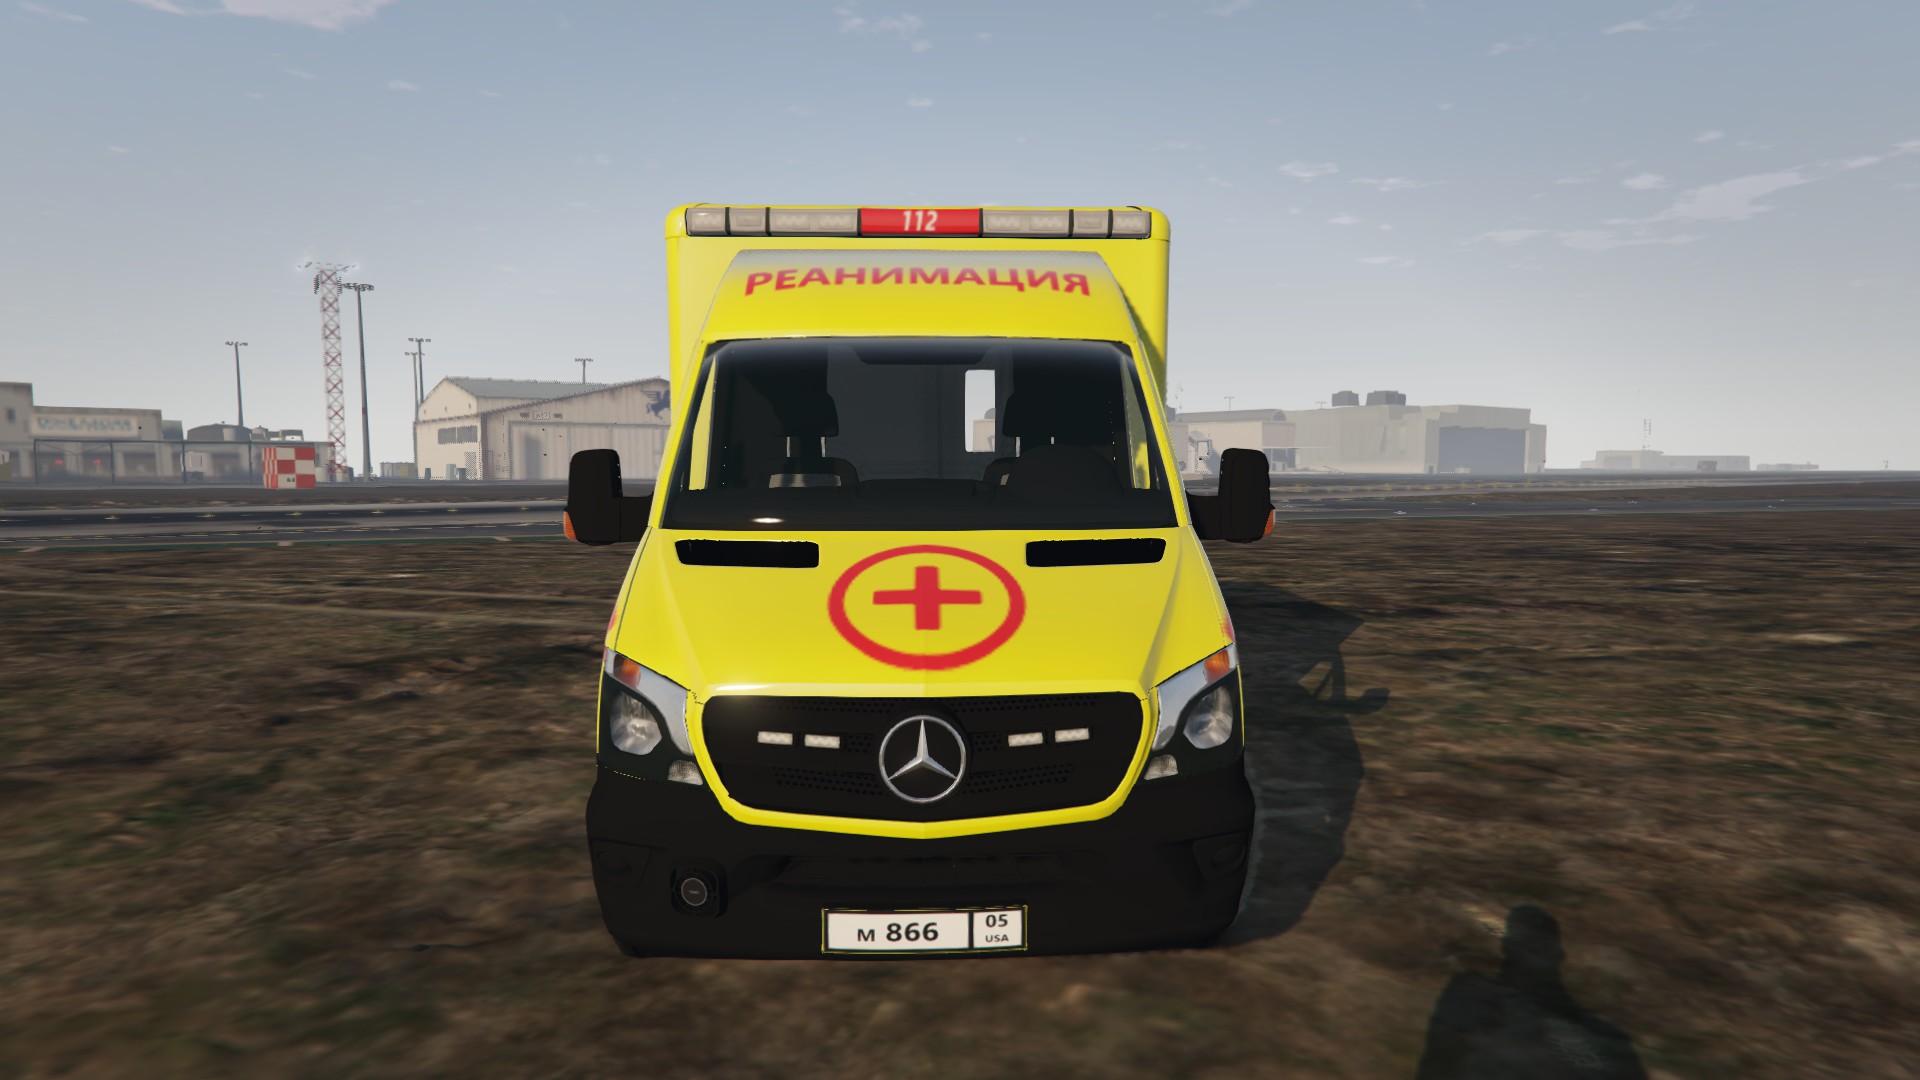 Russian ambulance gta 5 (120) фото